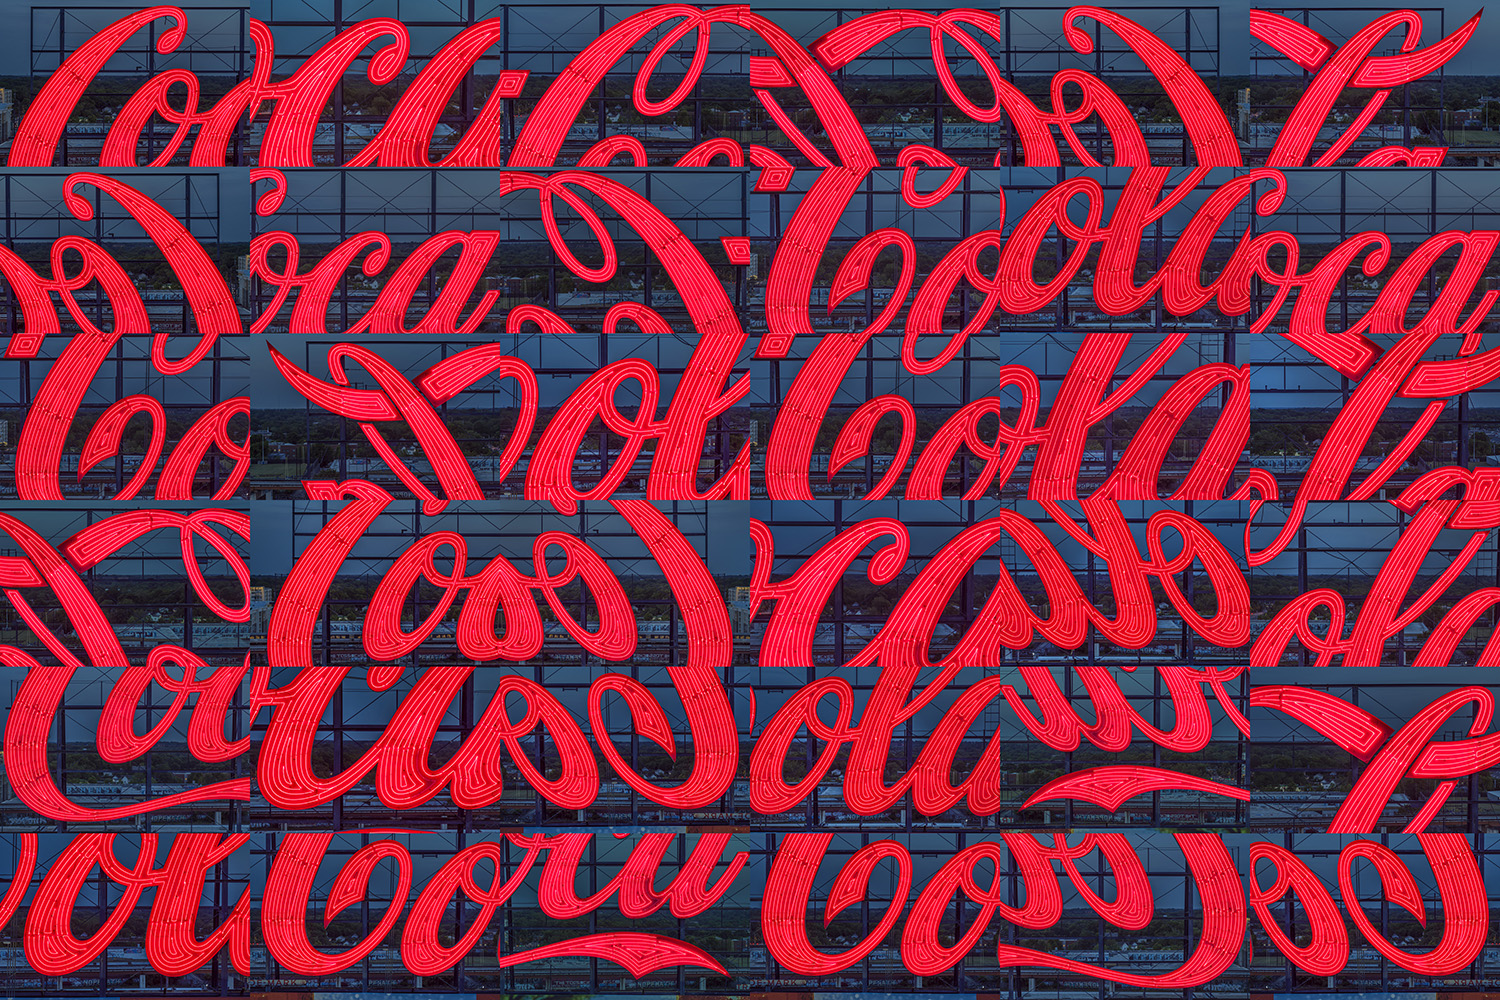 Coca Cola x 36 v.2 copy.jpg